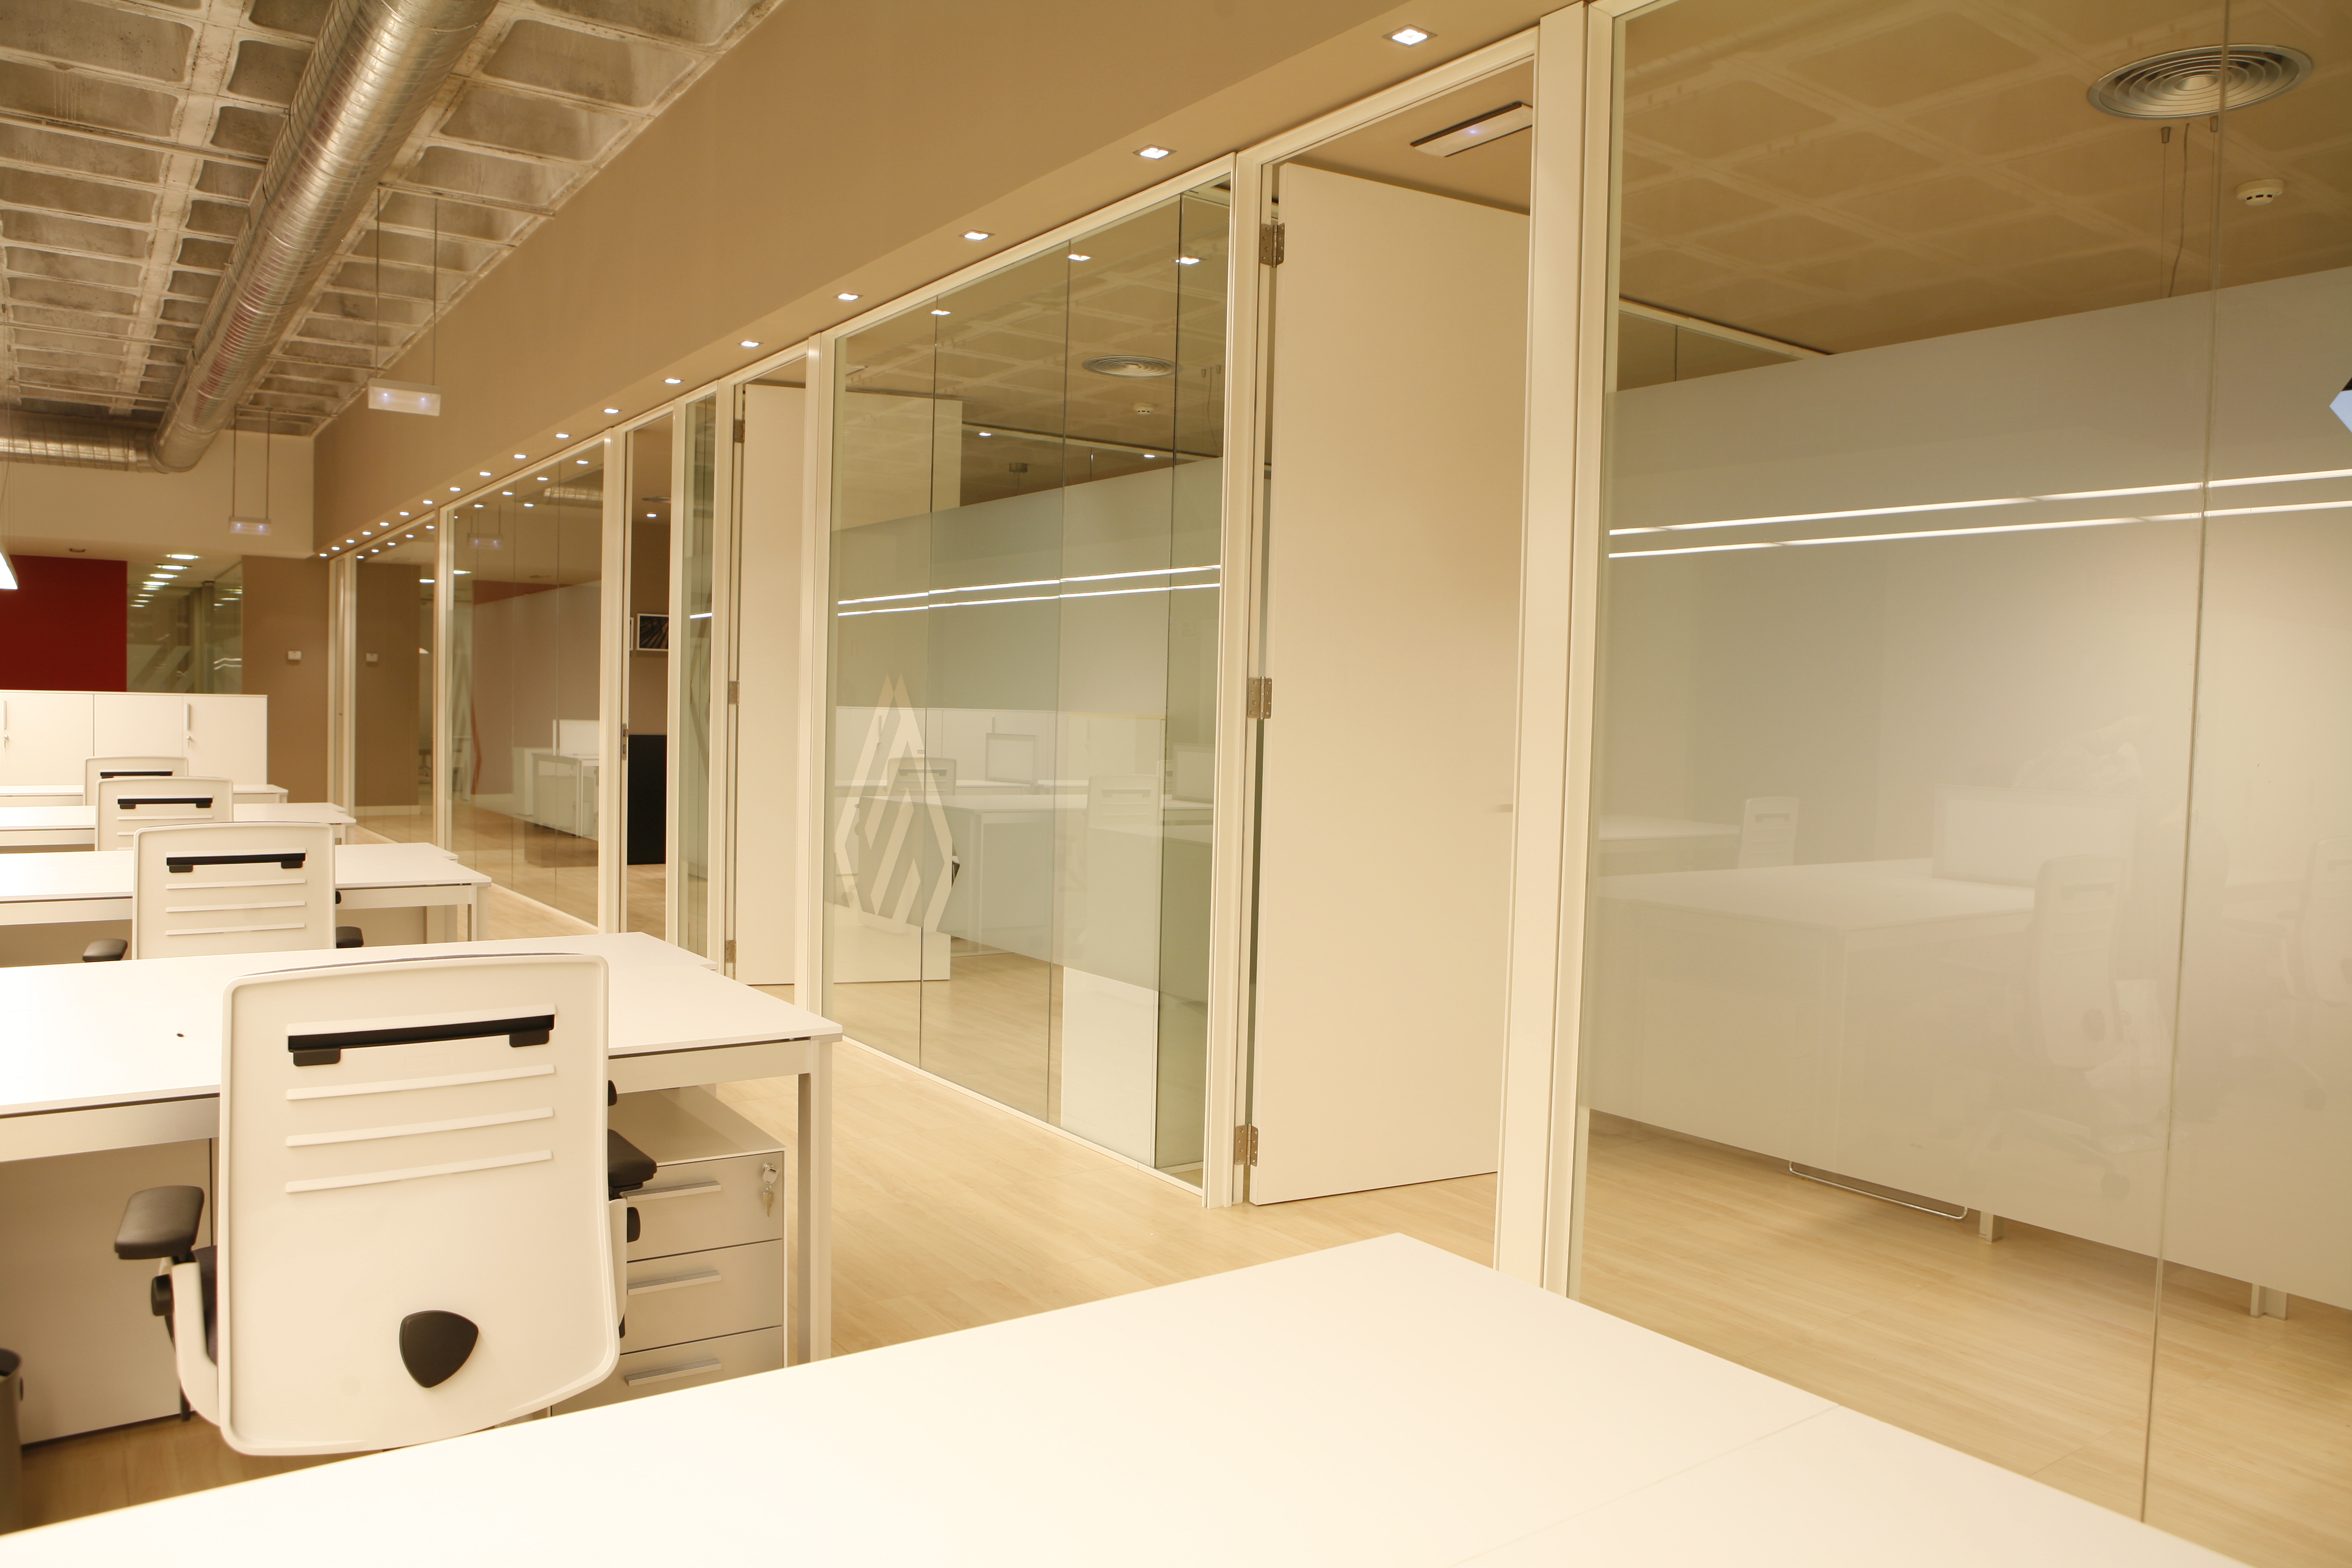 Sube Interiorismo - diseño de oficina